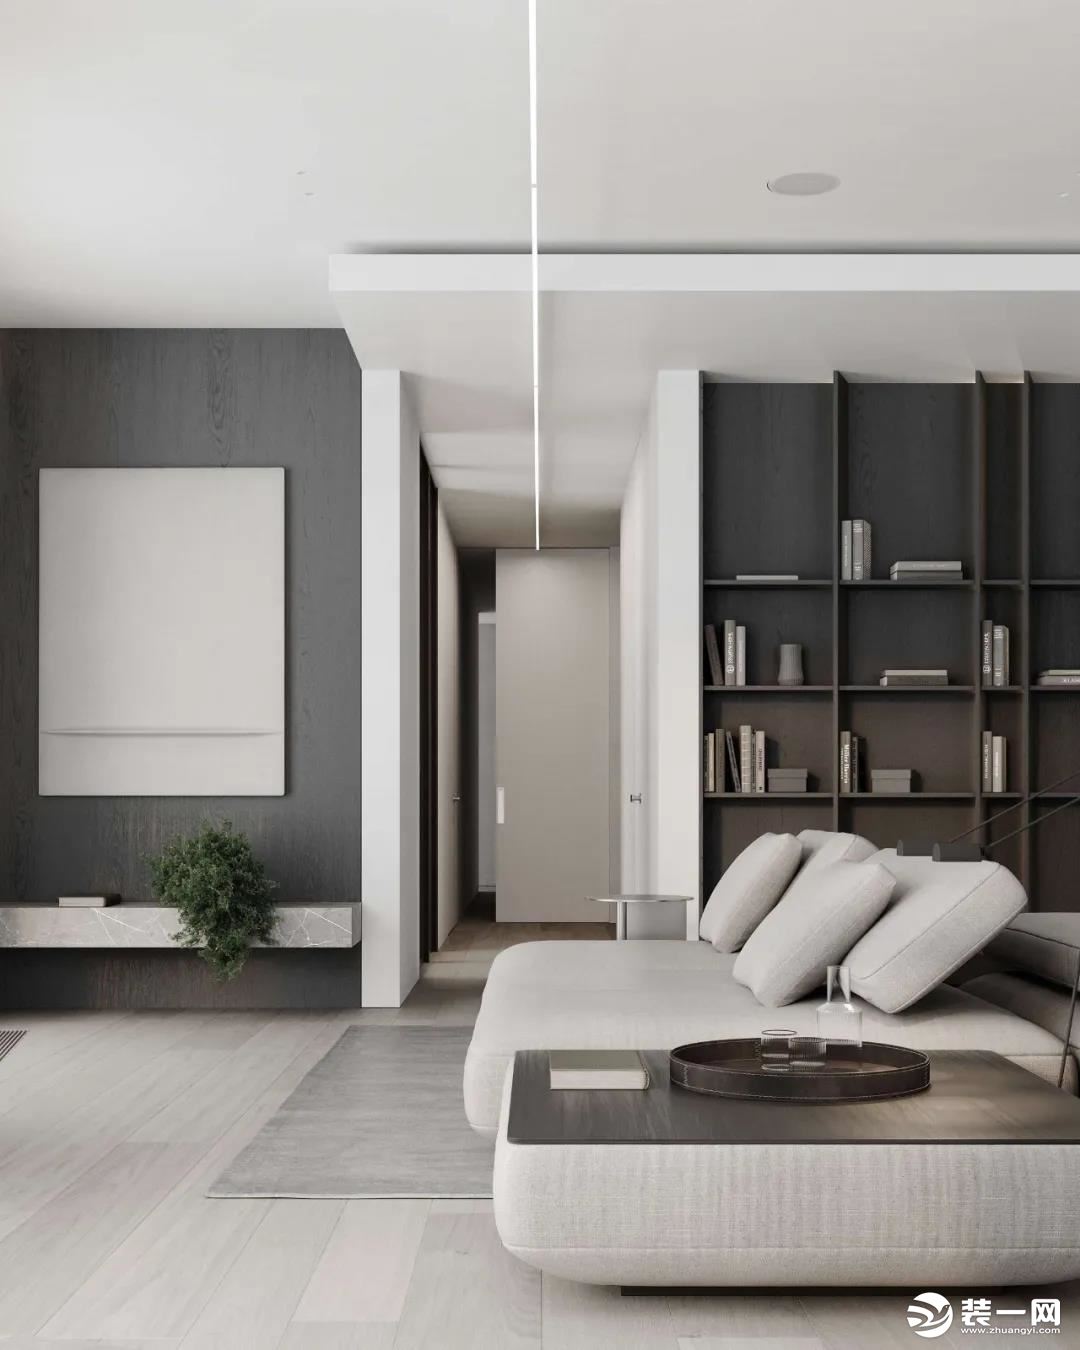 灰白的底色中，温润木材元素构建起冷暖平衡的空间韵律，再加上材质和灯光的运用凸显，使整个公寓质感与舒适